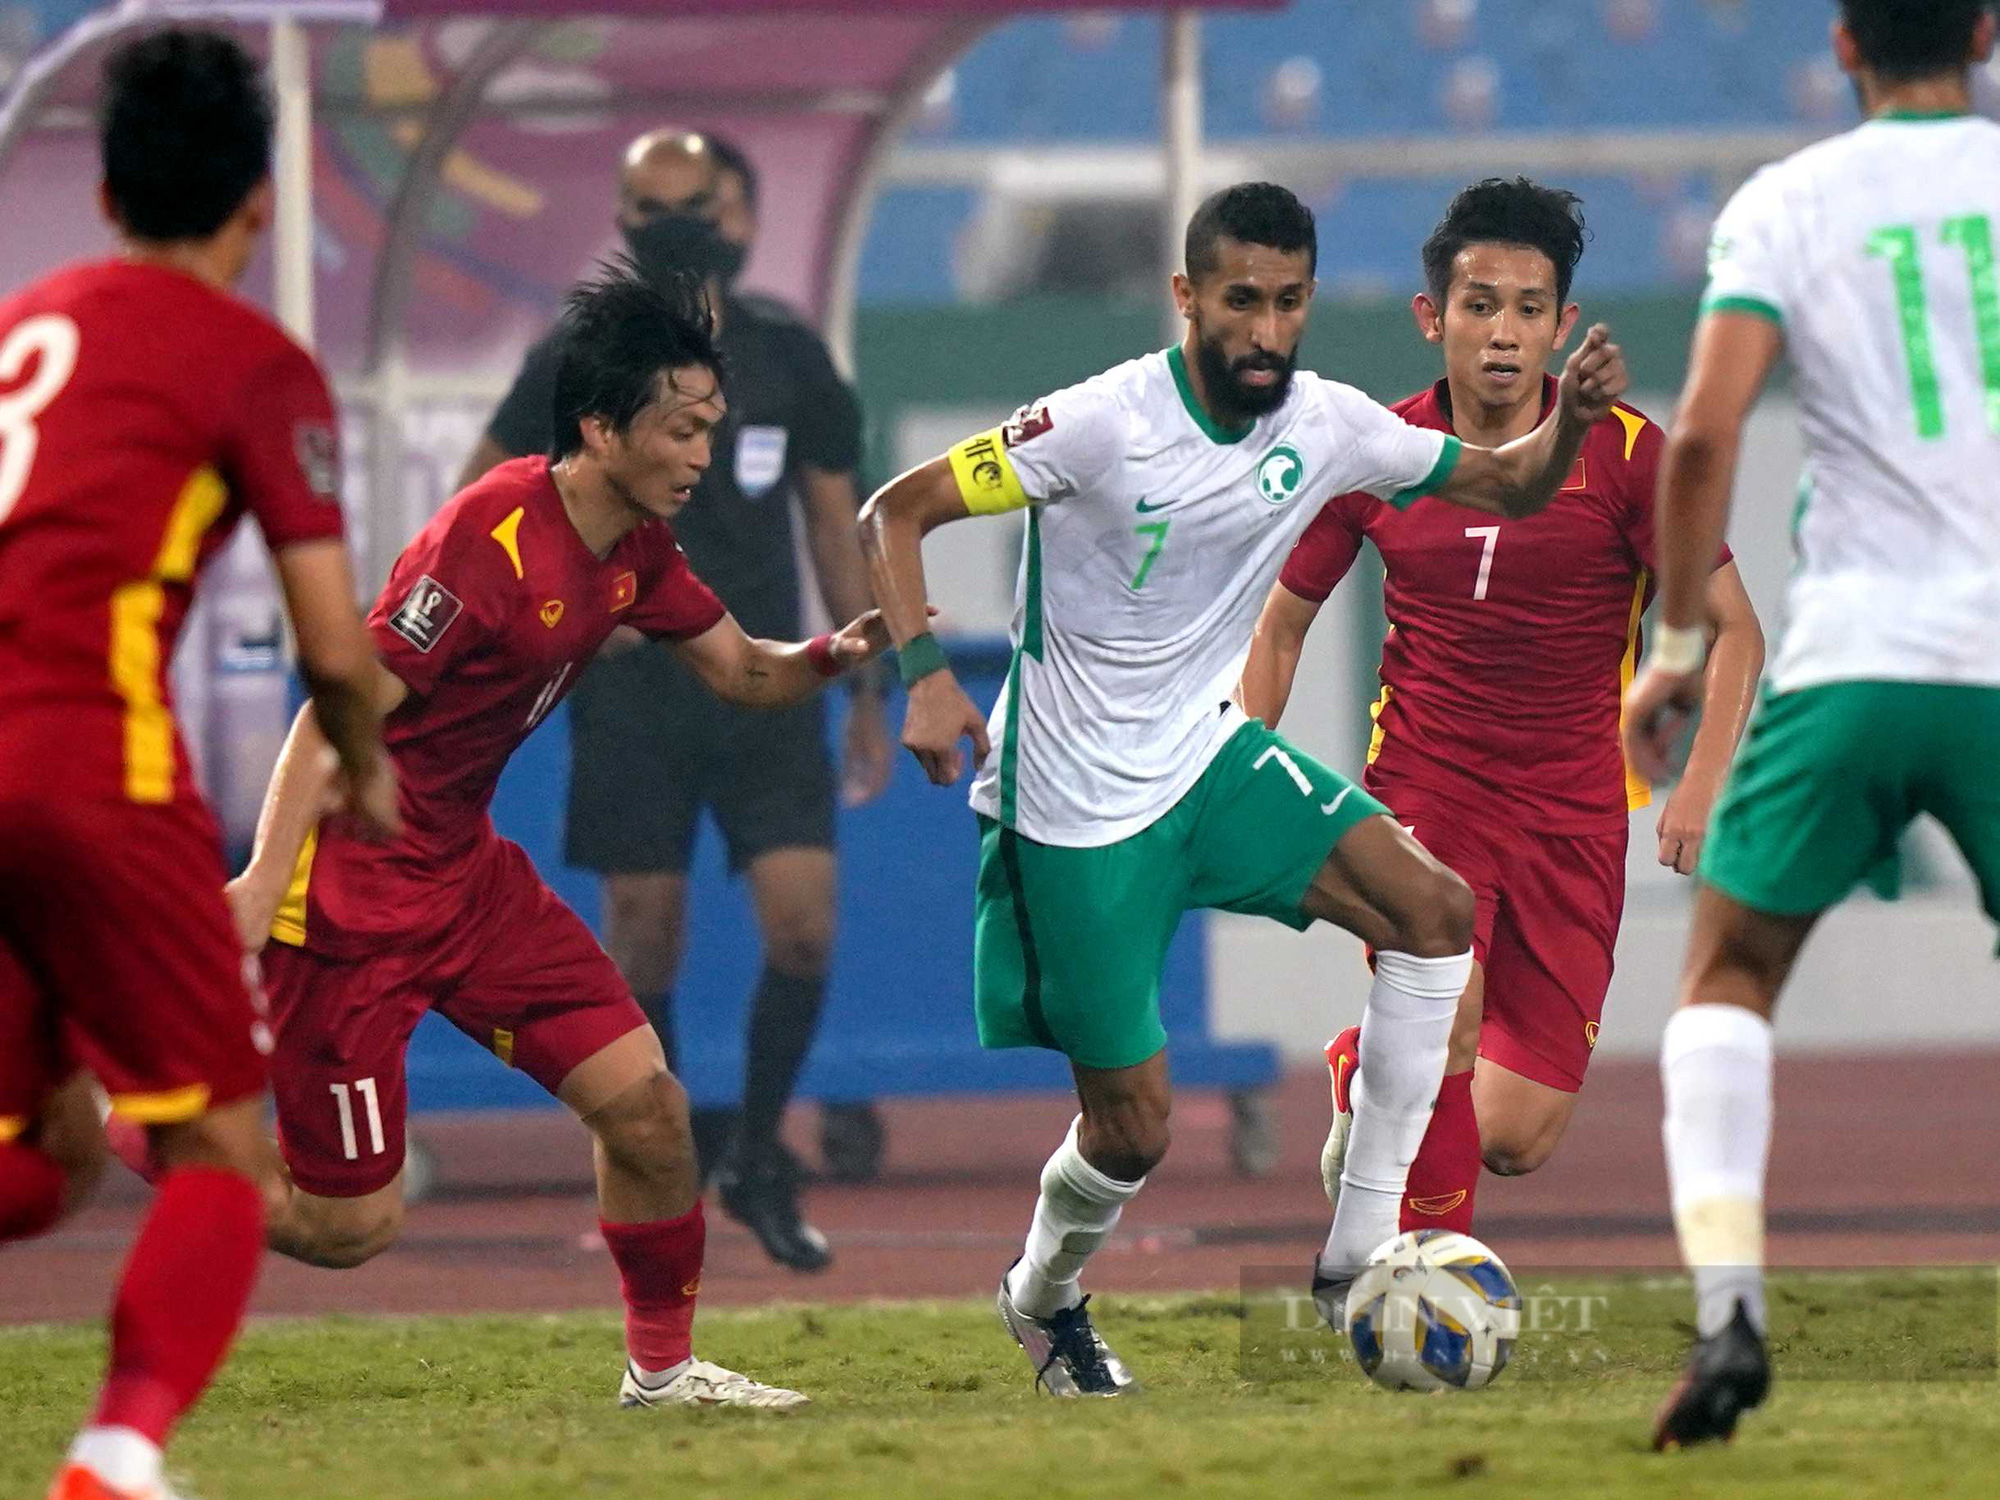 Chùm ảnh tuyển Việt Nam thi đấu lăn xả trước đội tuyển Ả Rập Xê Út - Ảnh 1.